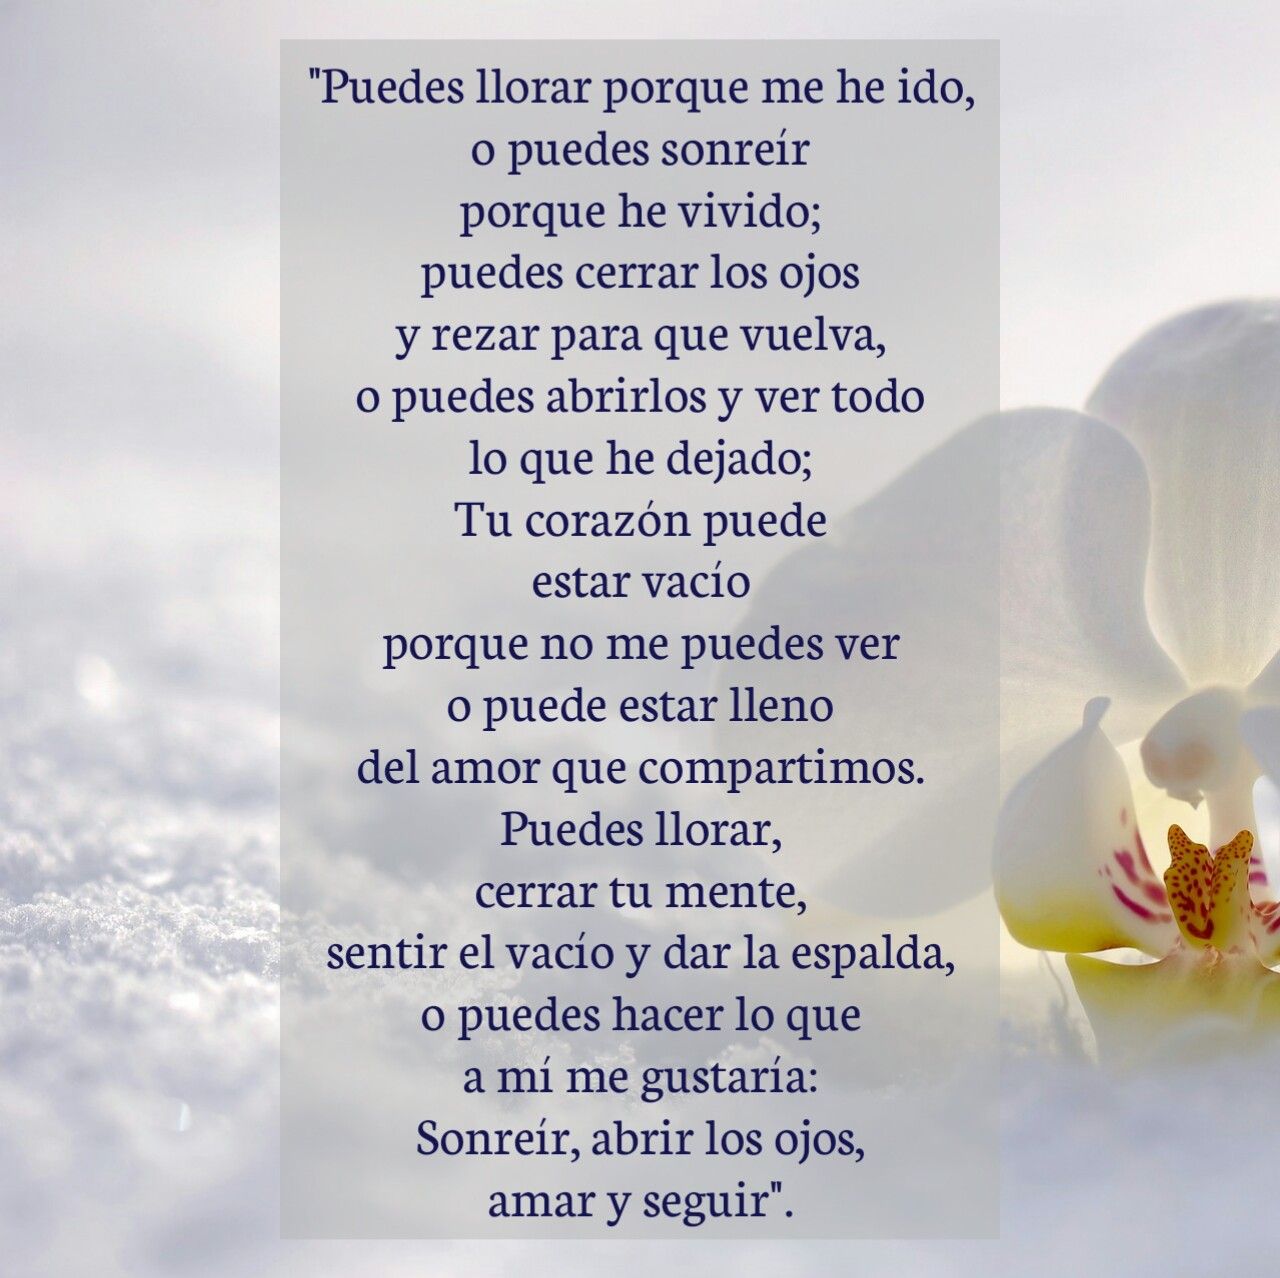 Naka Martinez🇻🇪 on Twitter: "#Luto #Duelo Precioso poema 